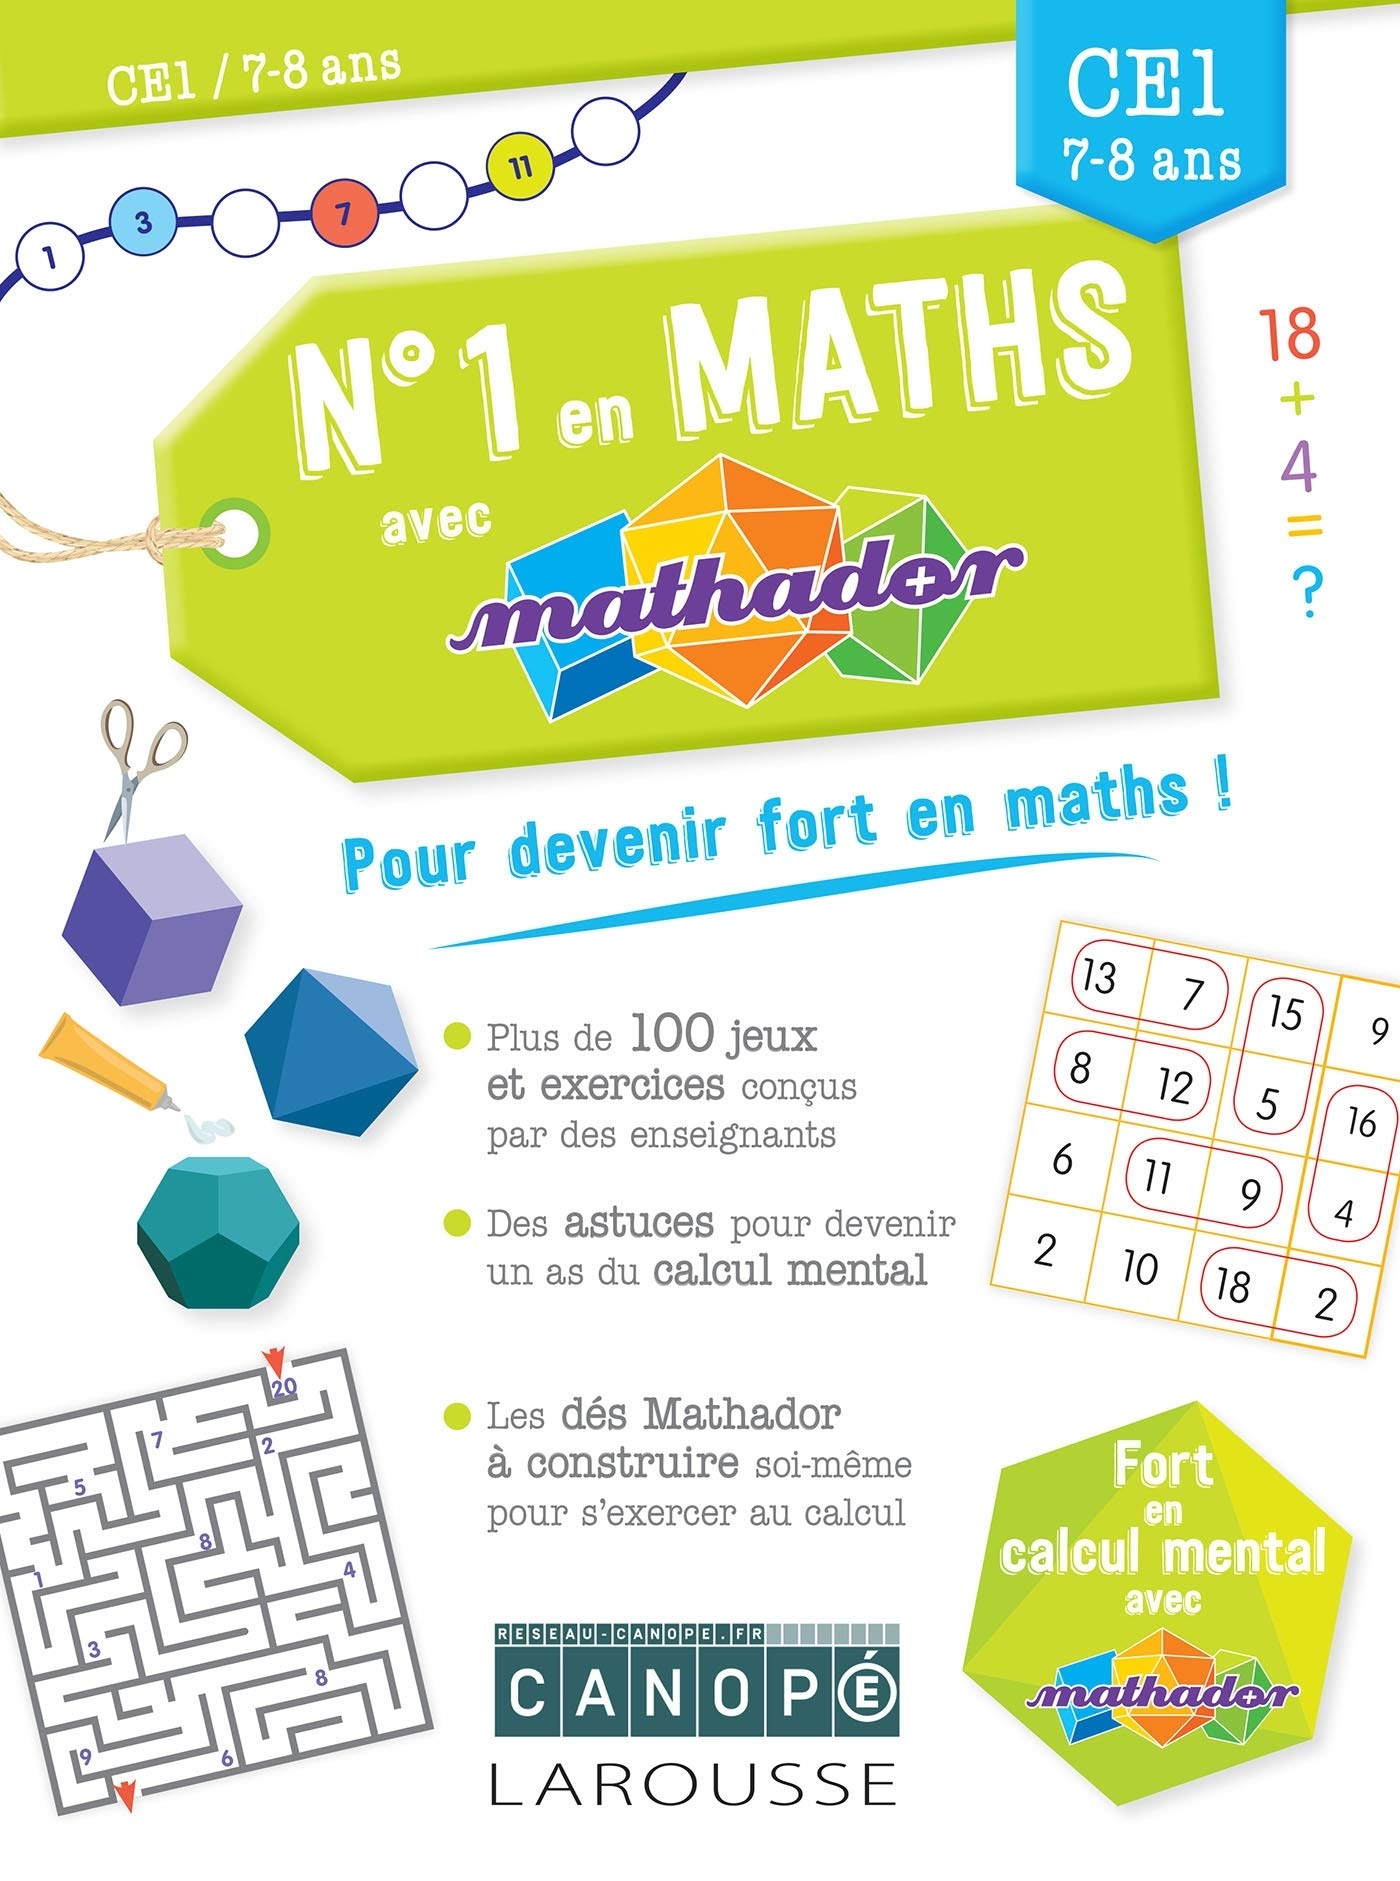 image Numéro 1 en maths avec Mathador CE1